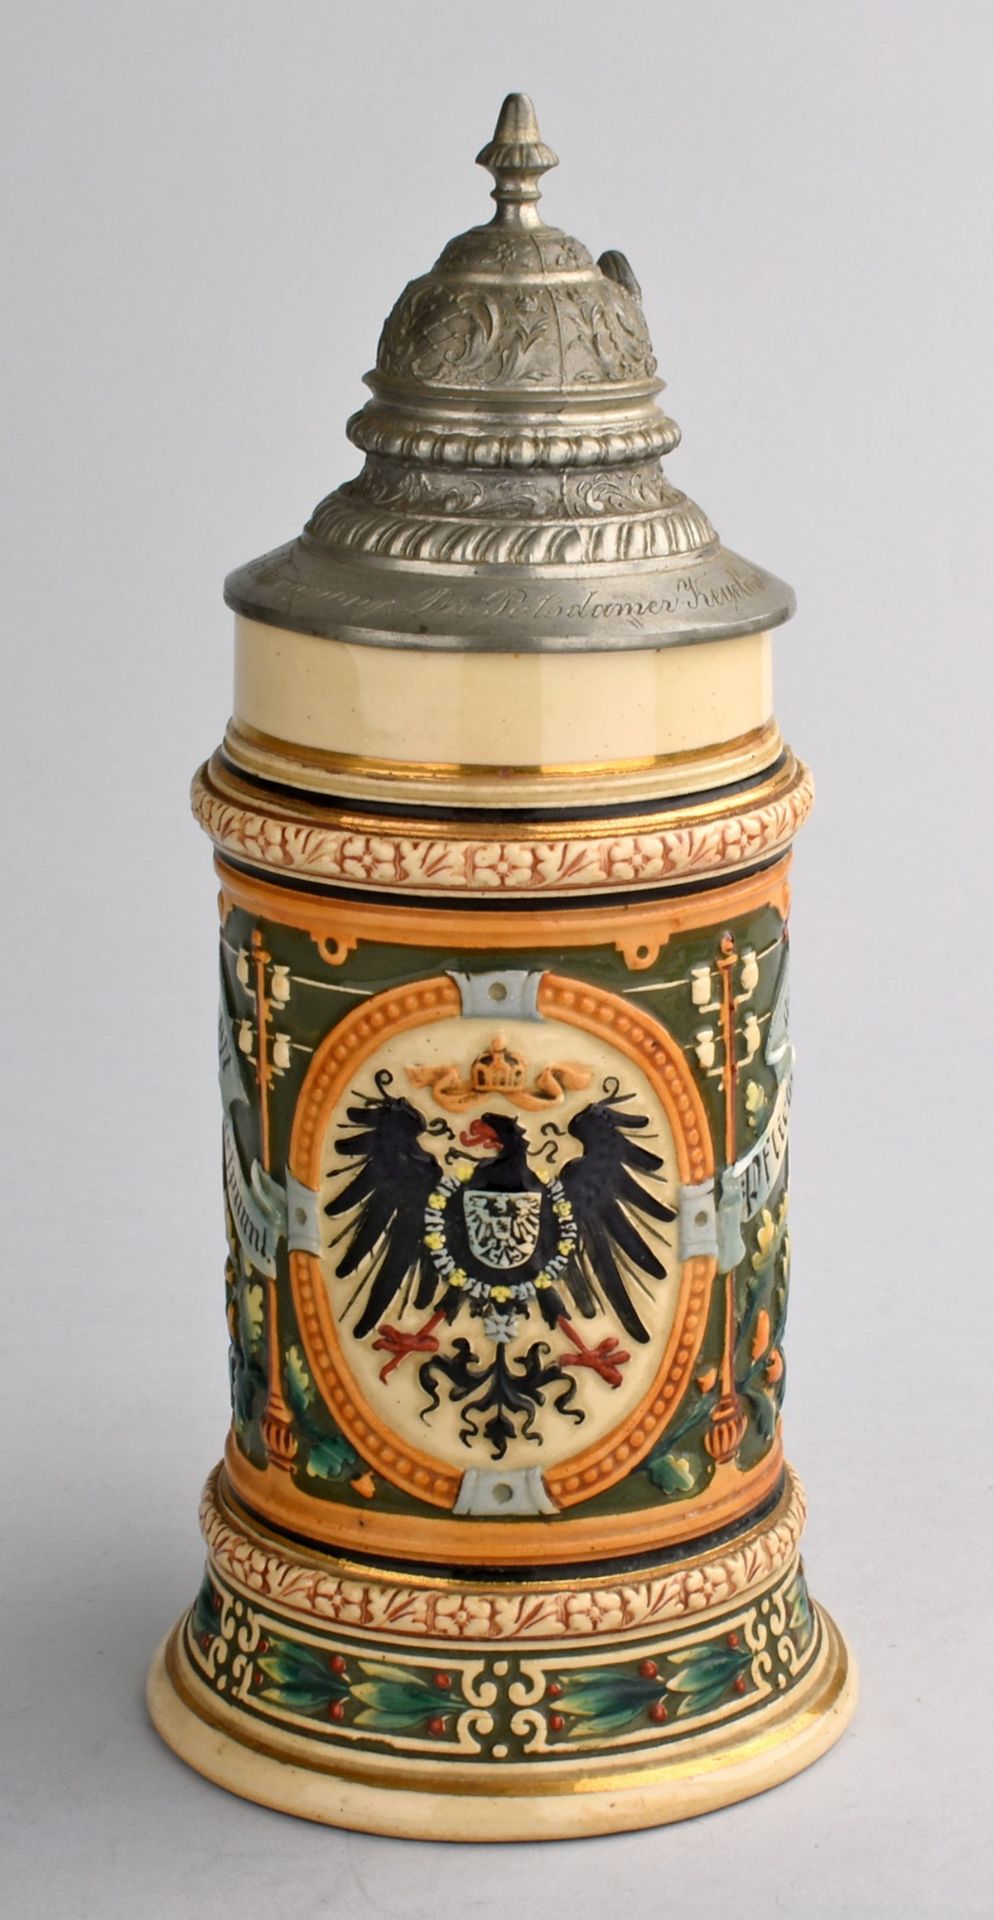 Historismus-Deckelhumpen Hersteller: C.S.A. Wiederhold, Berlin (Pressmarke), Steinzeug, leicht - Bild 2 aus 4